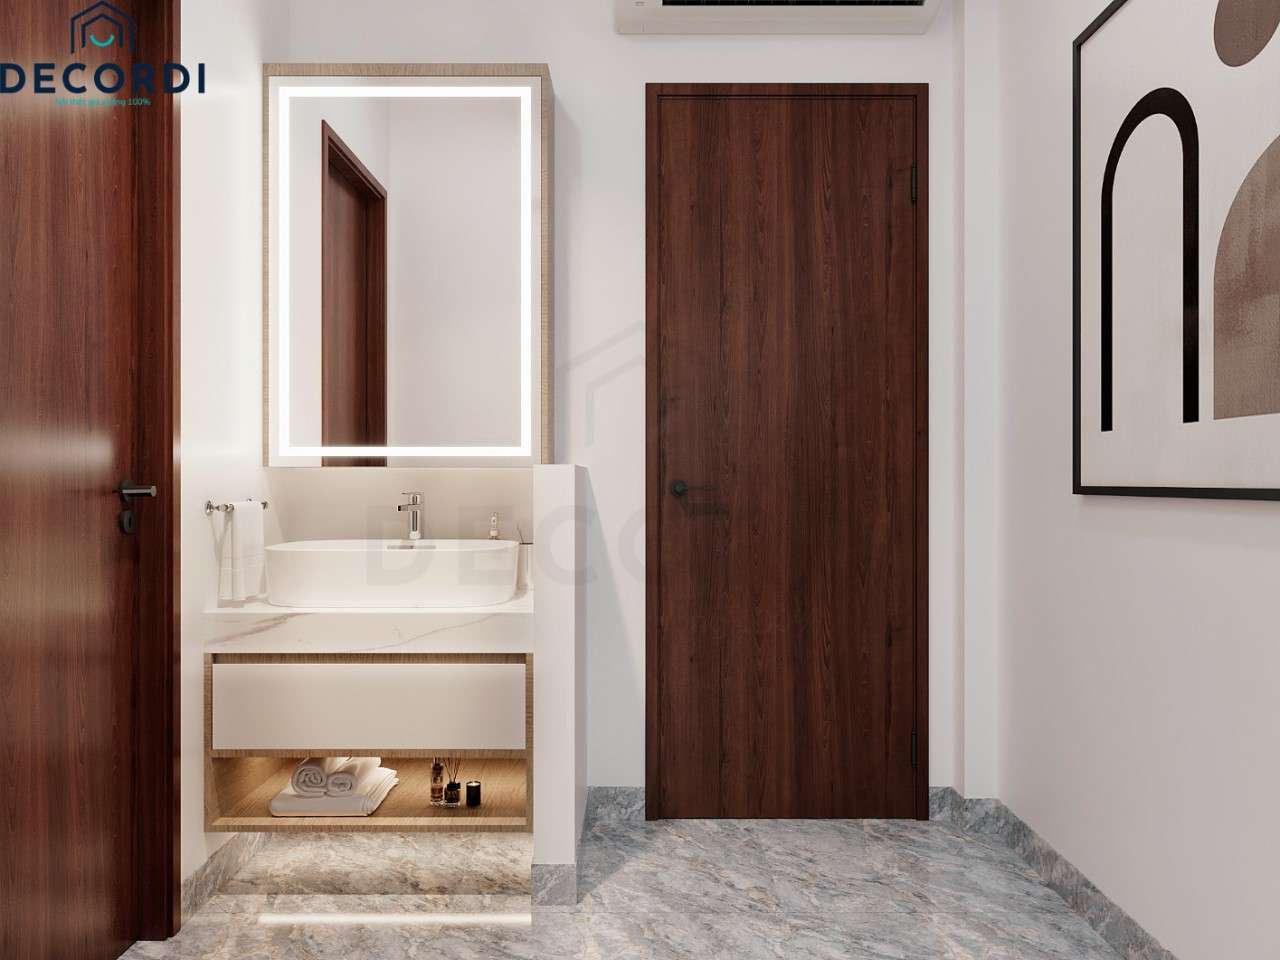 Nhà vệ sinh trong phòng ngủ được thiết kế đơn giản với gương lớn phù hợp cho nàng